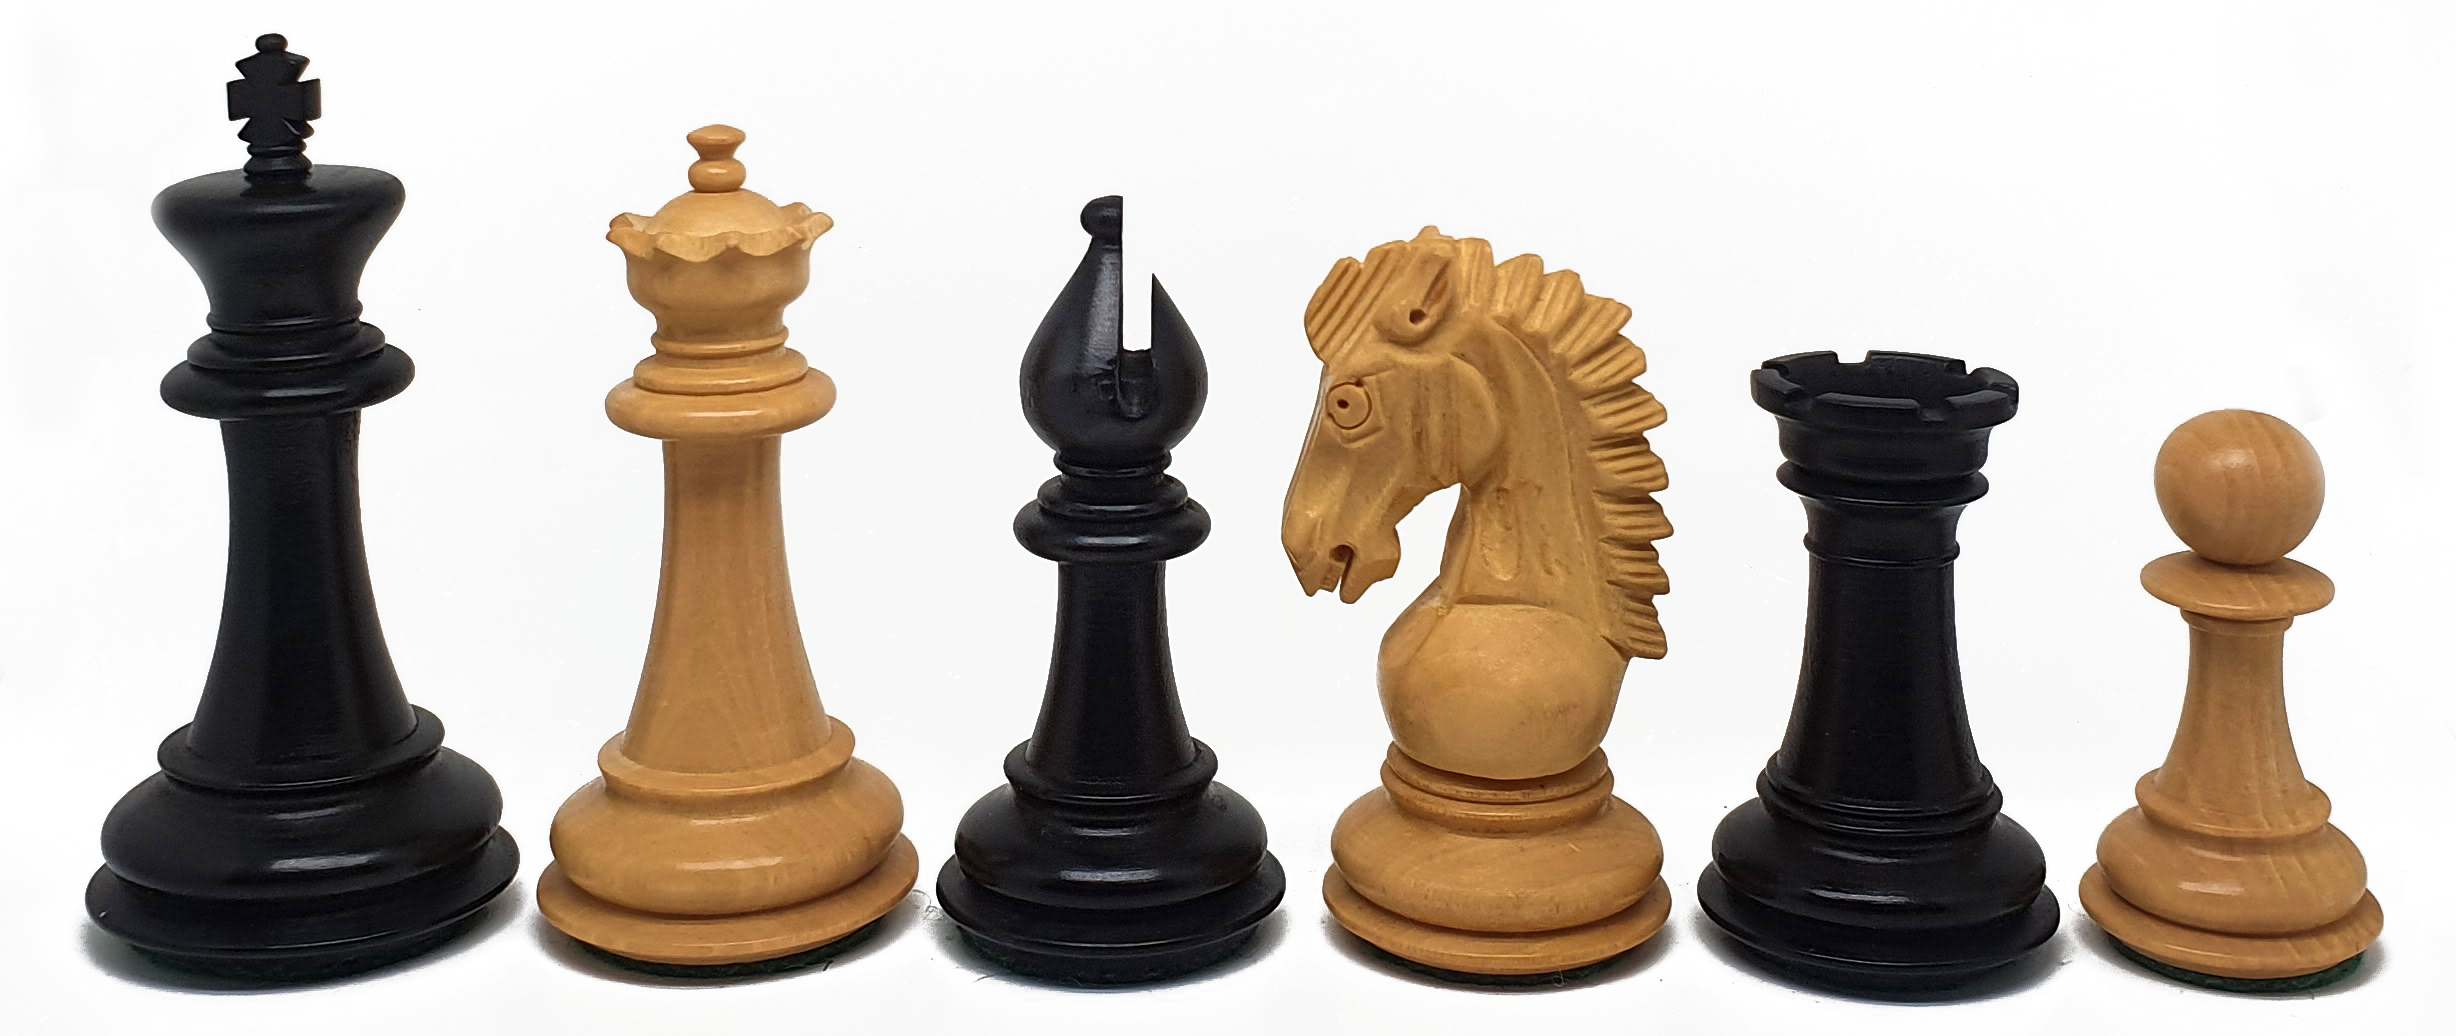 VI/ Piezas de ajedrez modelo Adventure "3.75" Ebanizado. 5580